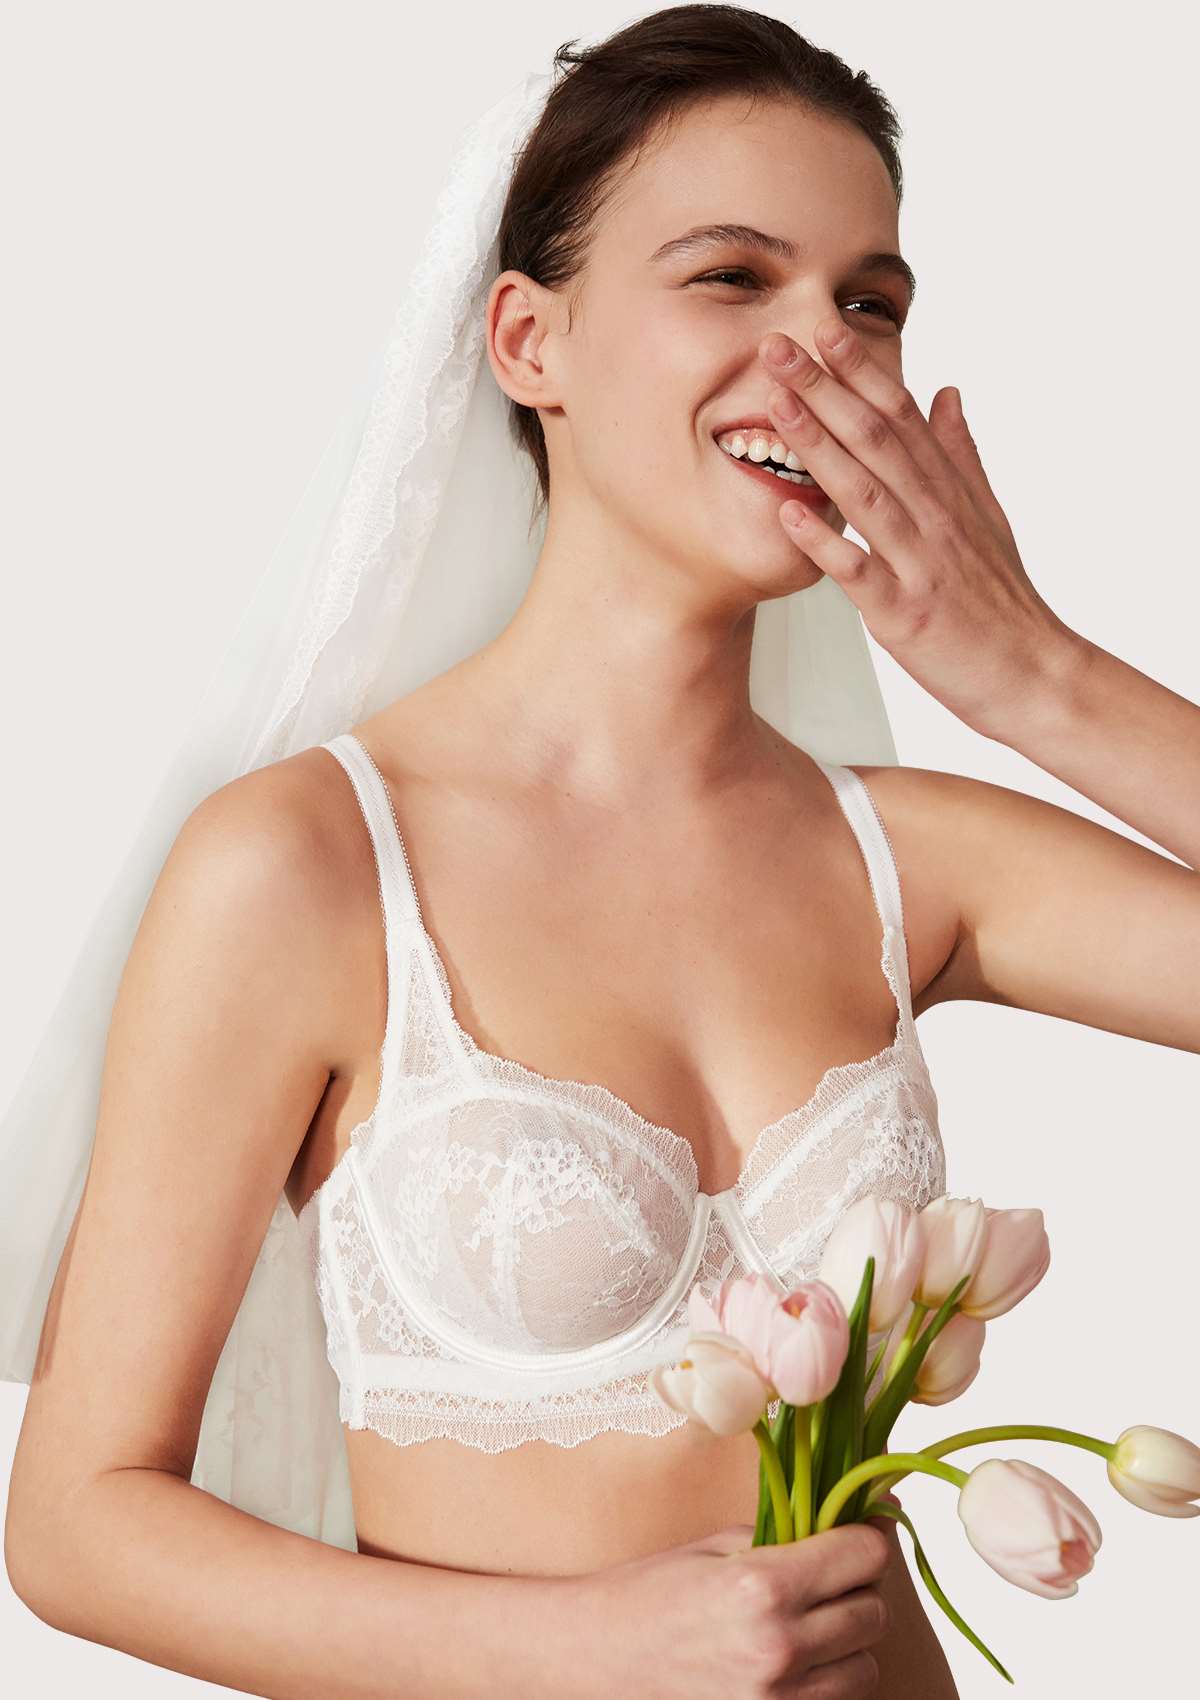 HSIA Floral Lace Unlined Bridal Romantic Balconette Bra Panty Set  - White / 38 / C